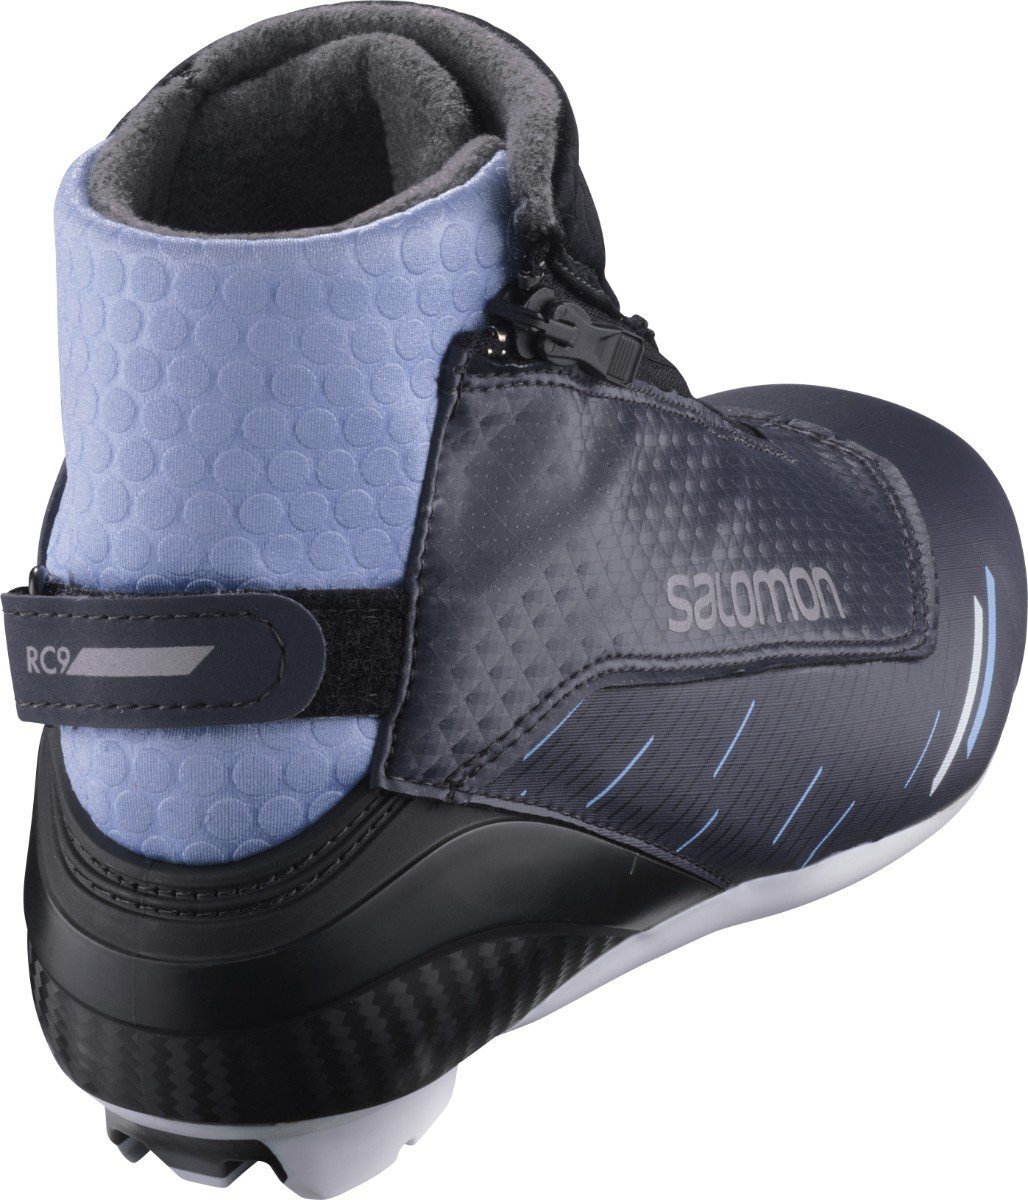 Salomon RC9 VITANE PROLINK W topánky na bežecké lyžovanie - black/blue